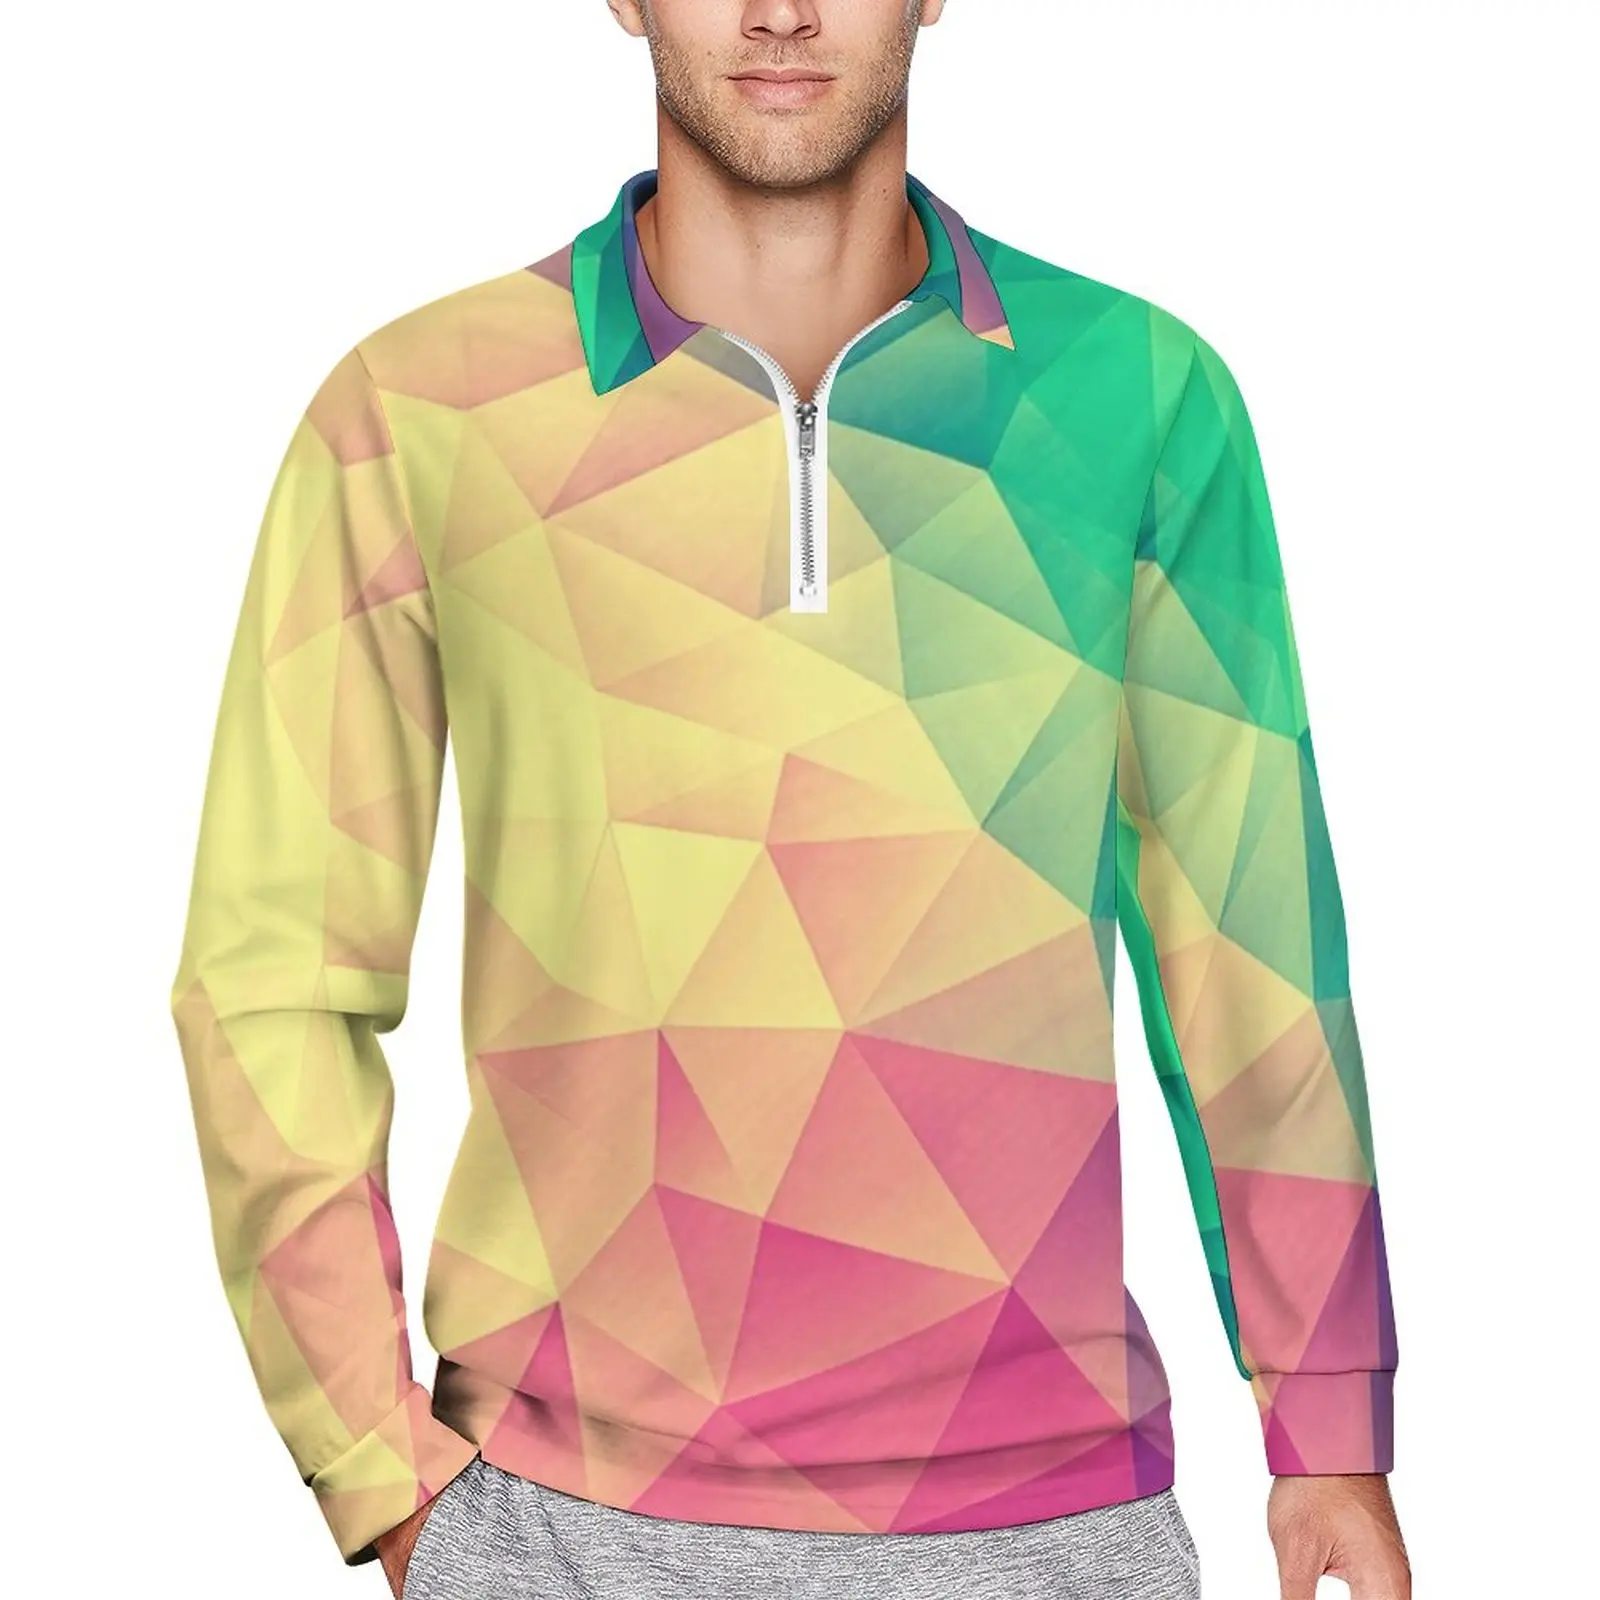 

Мужская футболка-поло с абстрактным геометрическим принтом, разноцветная Повседневная рубашка с треугольным вырезом, осенняя футболка с забавным воротником, топ большого размера с длинными рукавами